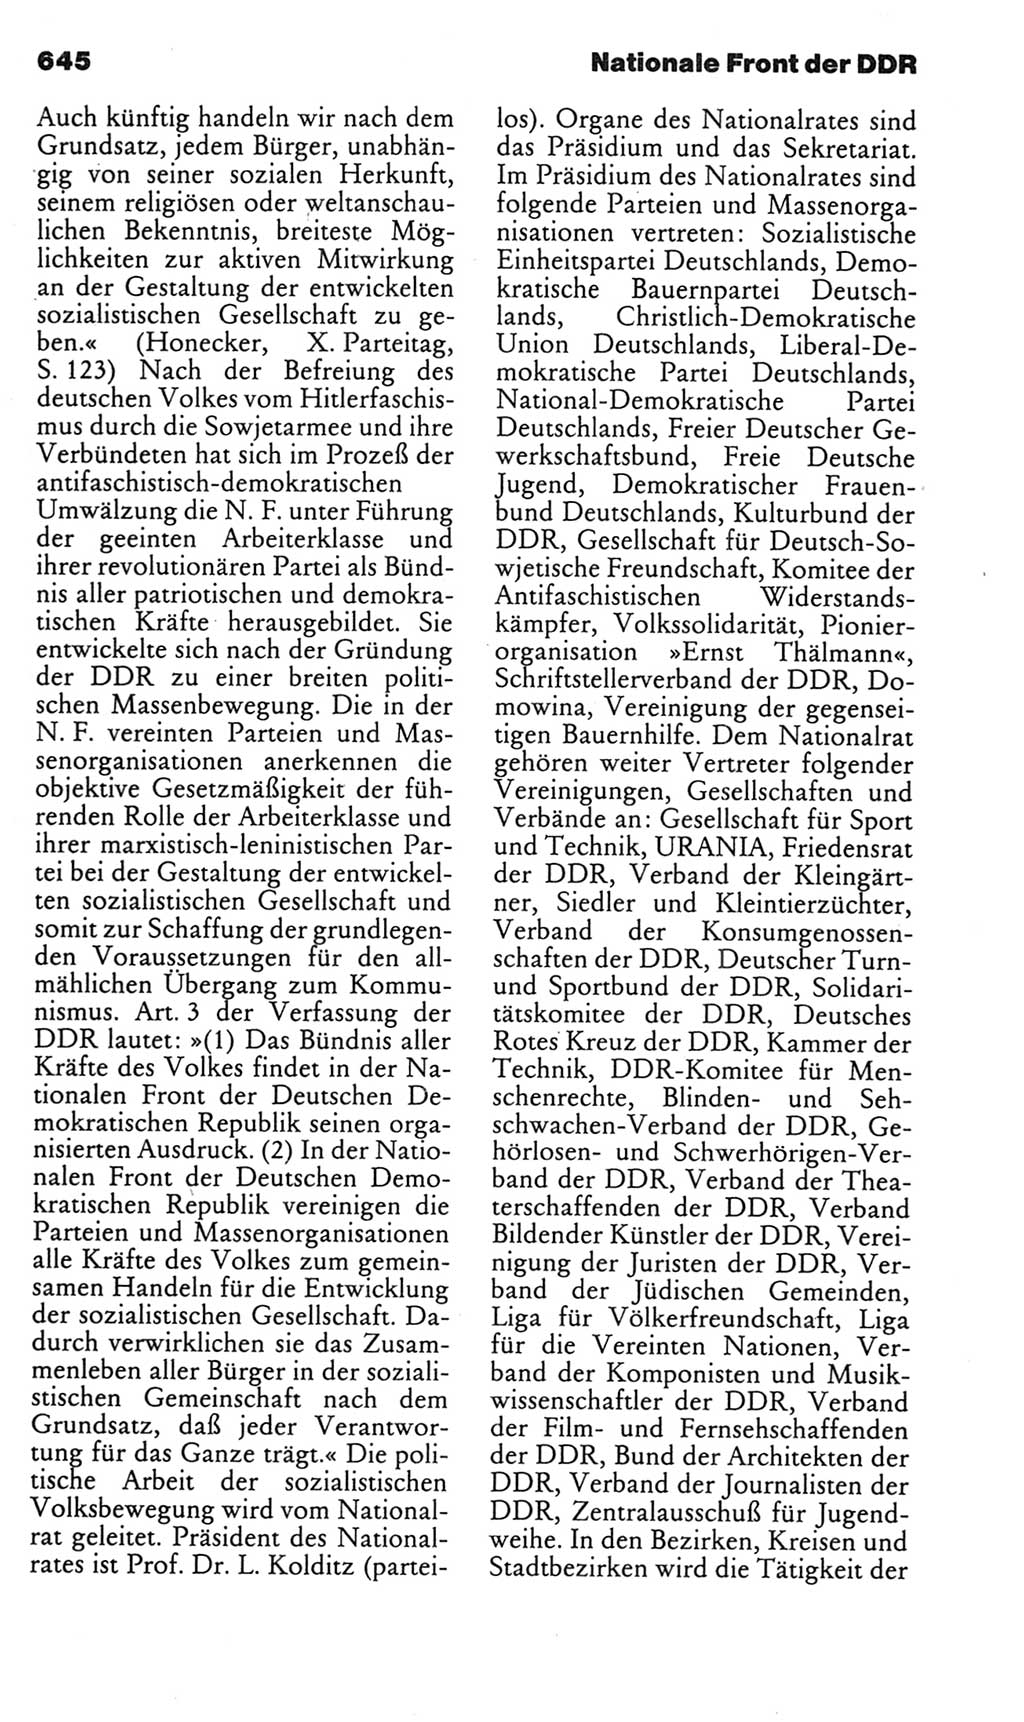 Kleines politisches Wörterbuch [Deutsche Demokratische Republik (DDR)] 1985, Seite 645 (Kl. pol. Wb. DDR 1985, S. 645)